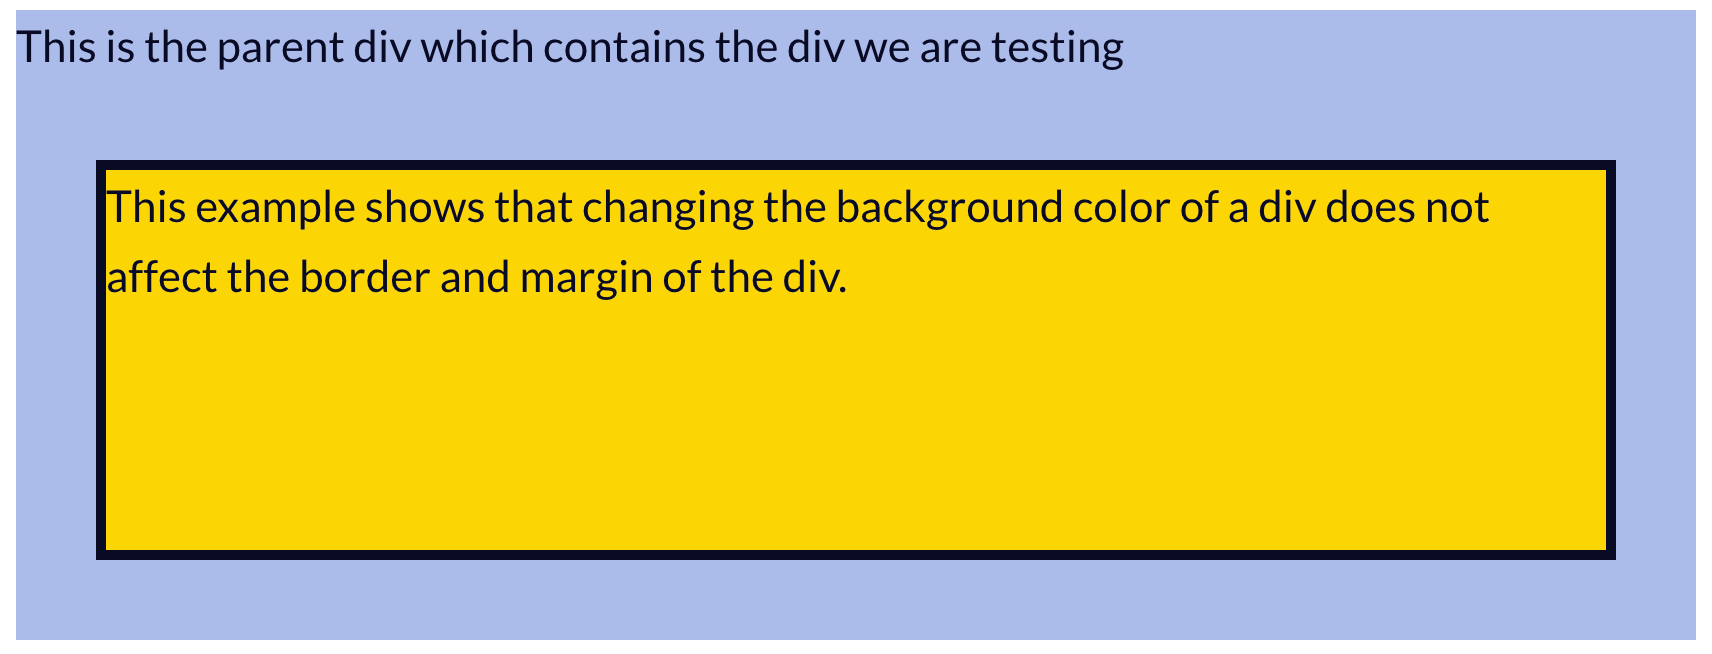 HTML Background Color, Hướng dẫn, Div background image - Nhấp vào hình ảnh liên quan để tìm hiểu thêm về HTML Background Color và cách sử dụng nó trong thiết kế web. Hướng dẫn chi tiết sẽ giúp bạn hiểu rõ hơn và Div background image sẽ giúp website của bạn trông hoàn hảo hơn.